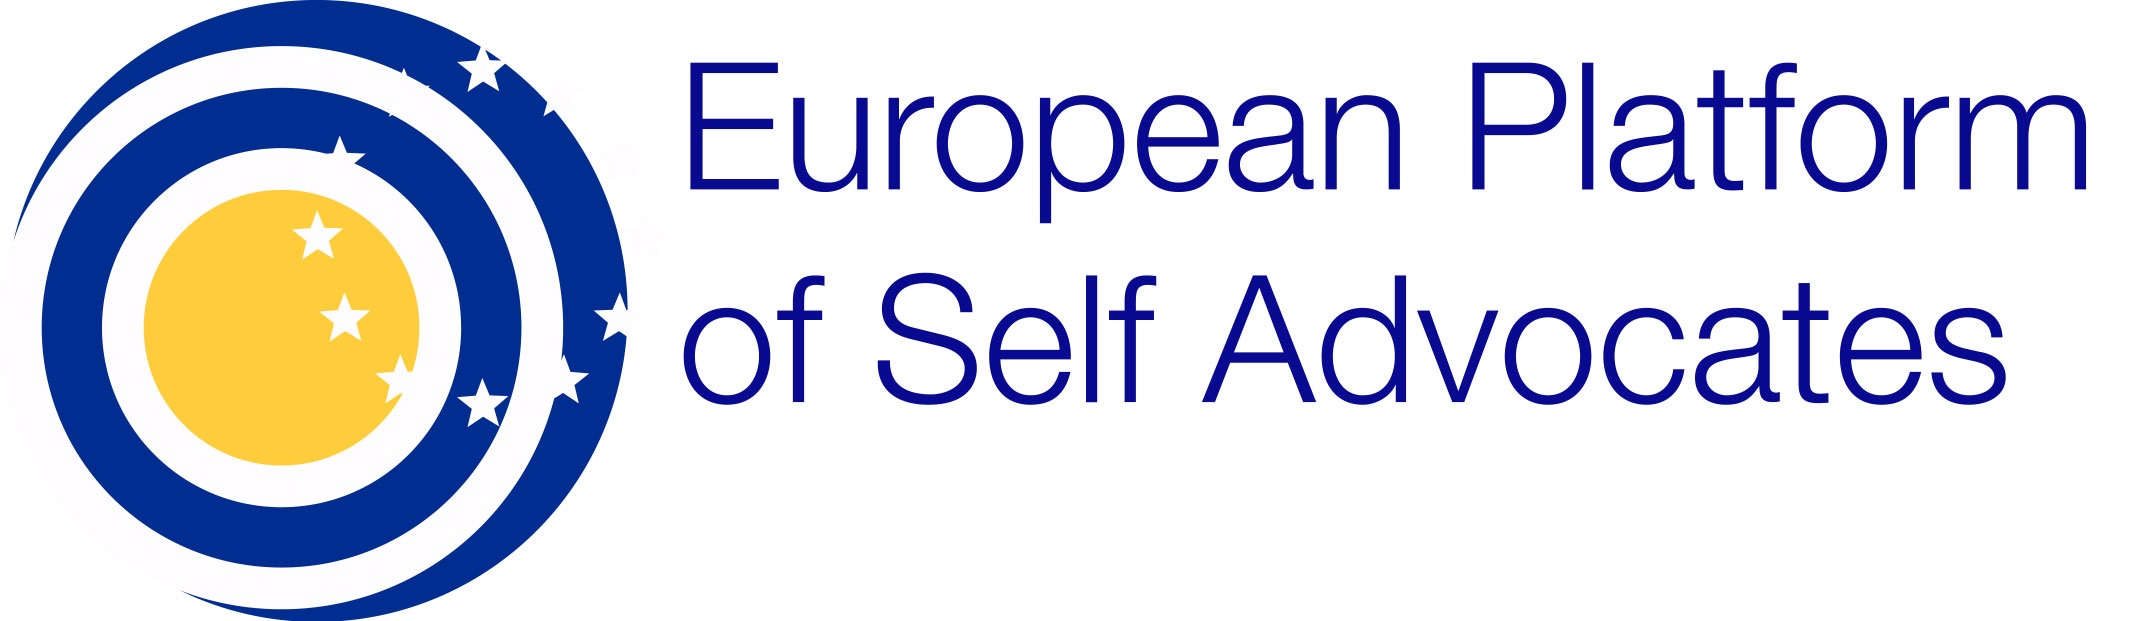 Das ist das Logo der Europäischen Plattform für Selbst-Vertreter_innen.